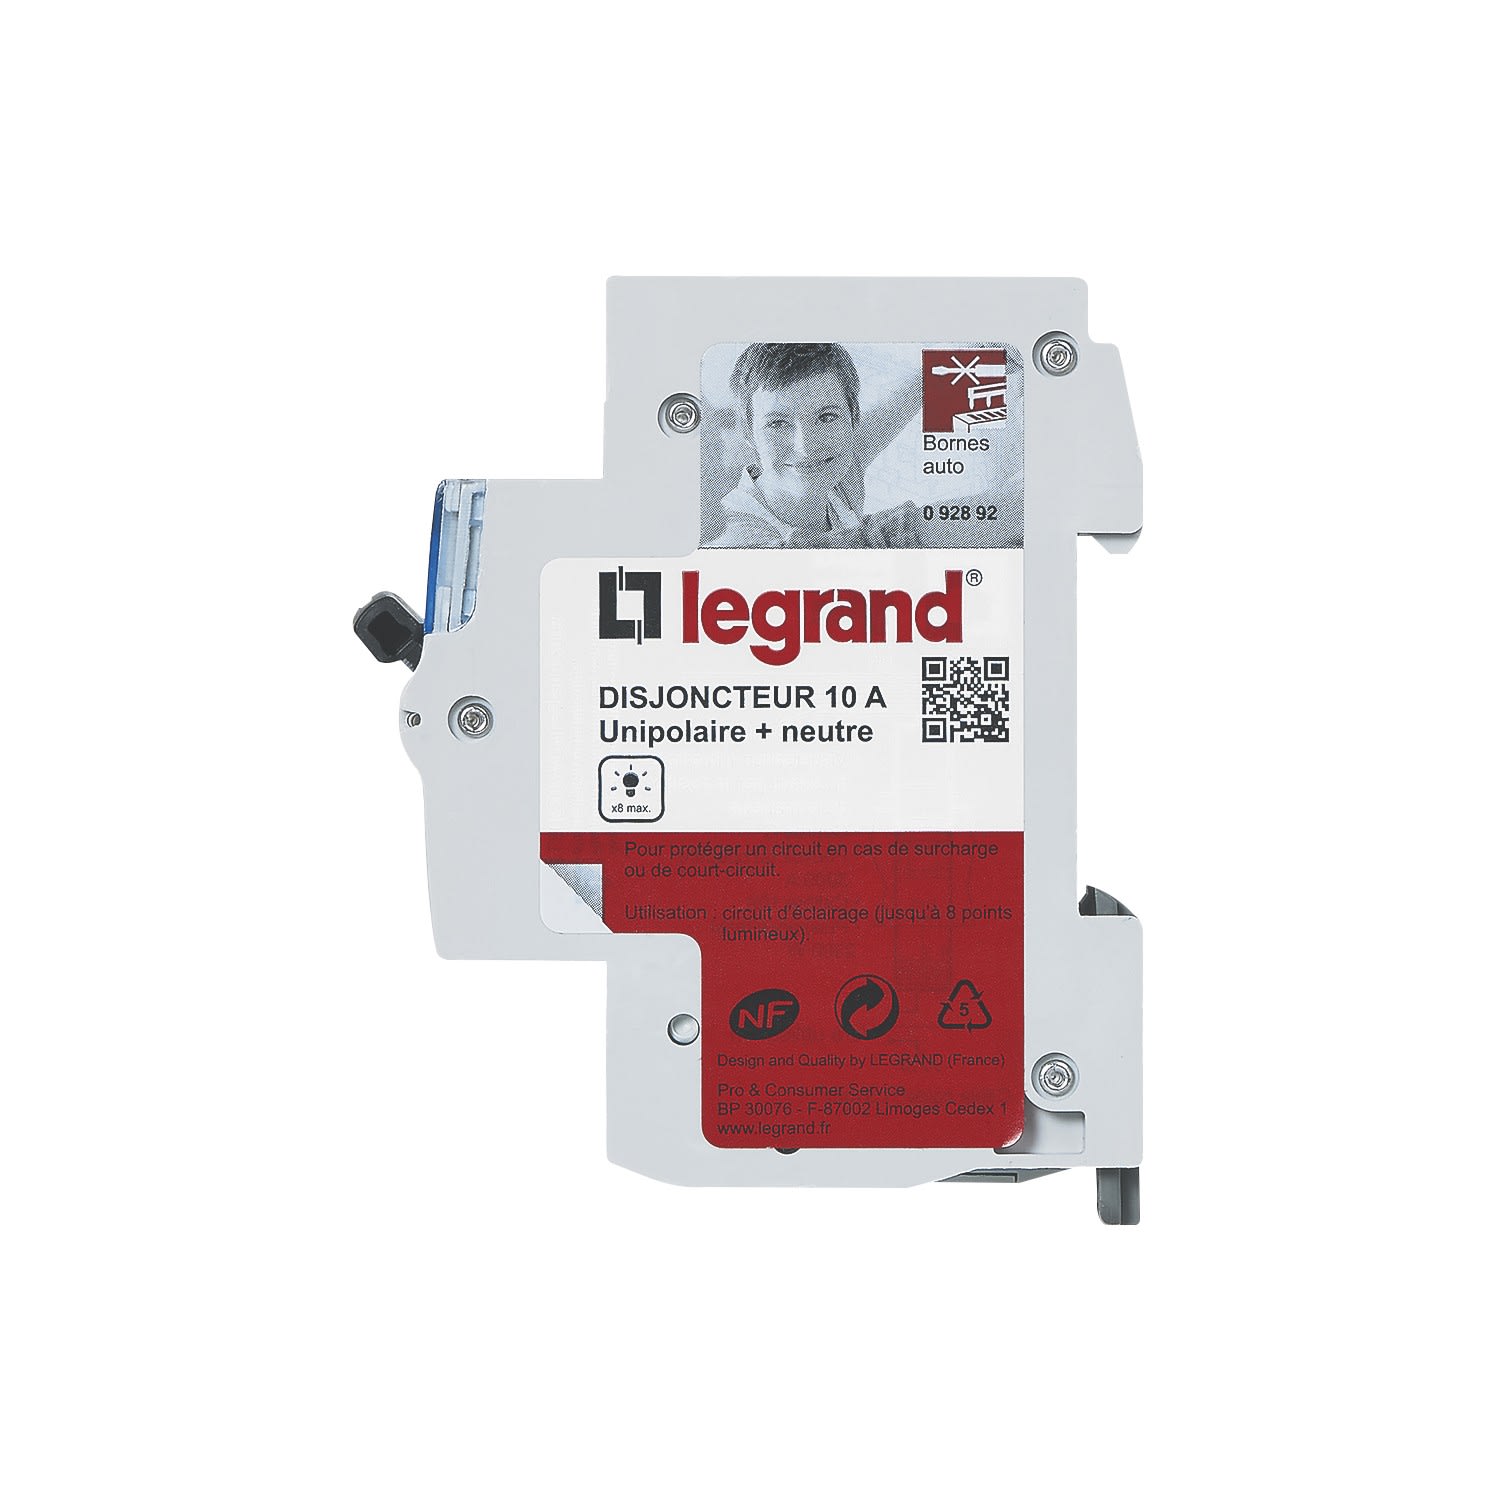 Disjoncteur DNX3 Phase + Neutre 10A - bornes automatiques - 1 module Legrand